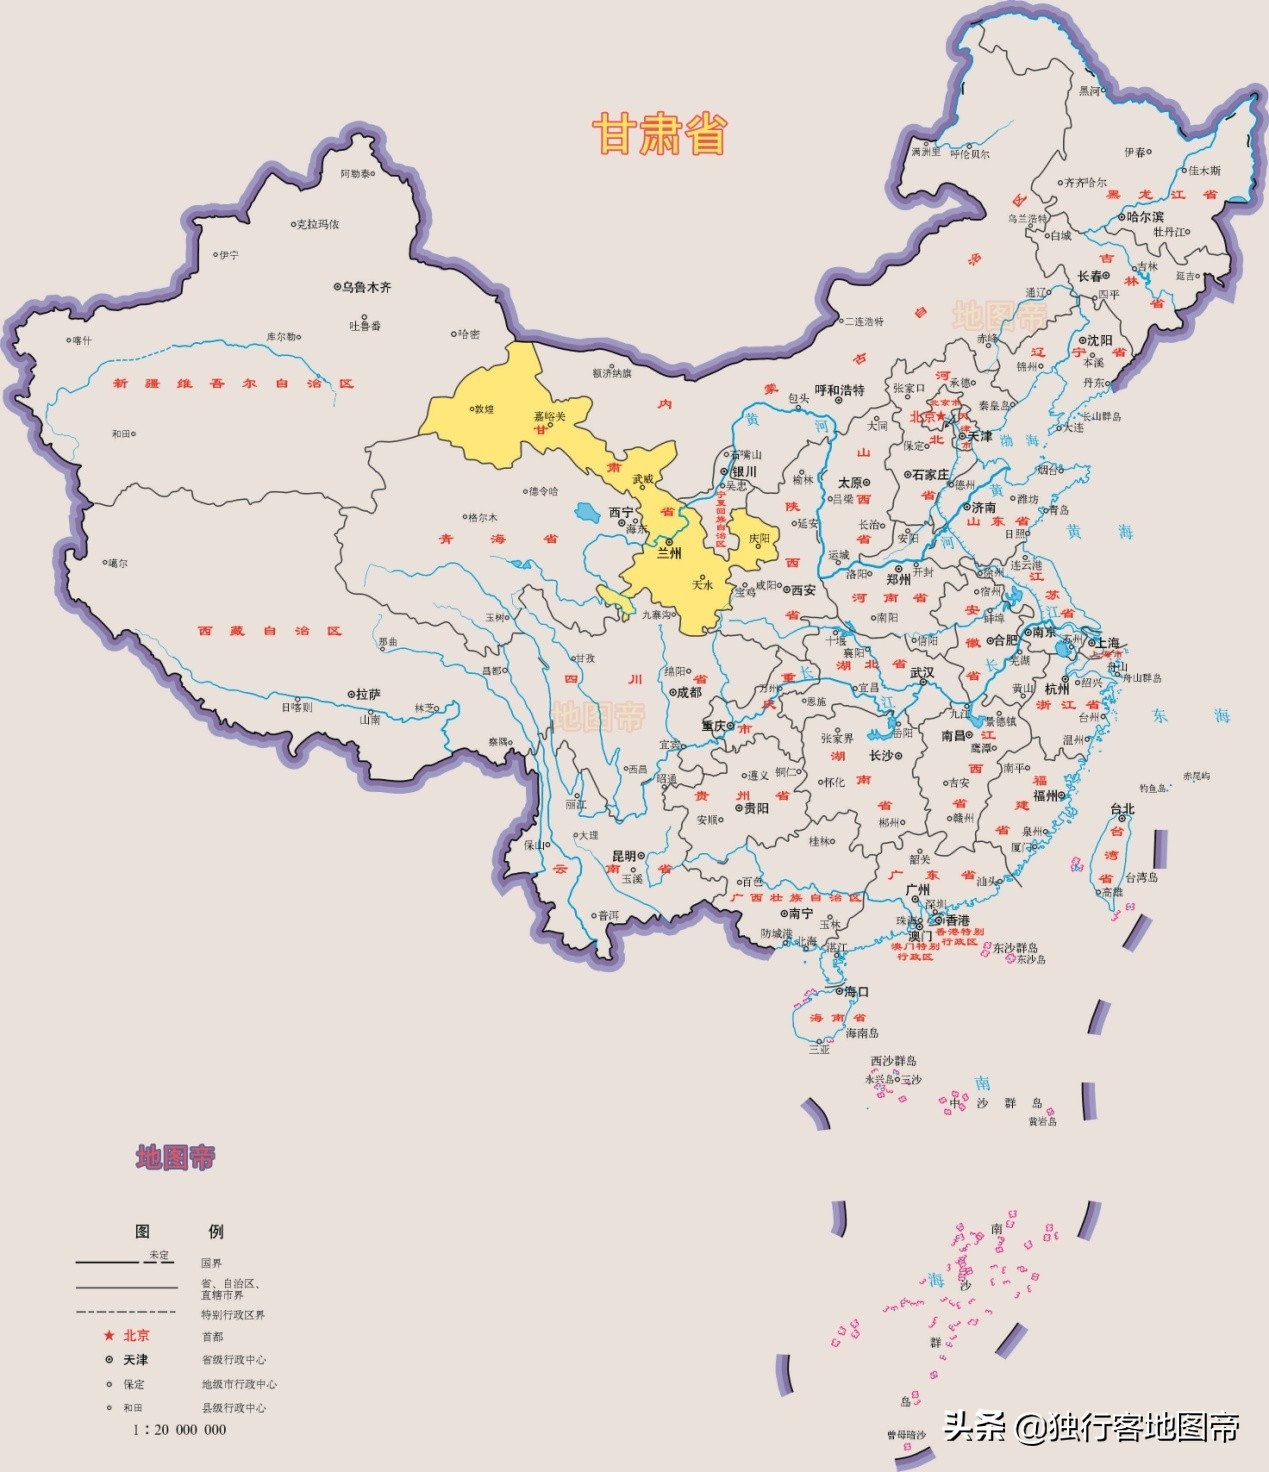 甘肃省是西北省份?其实不全是,有一部分属于南方